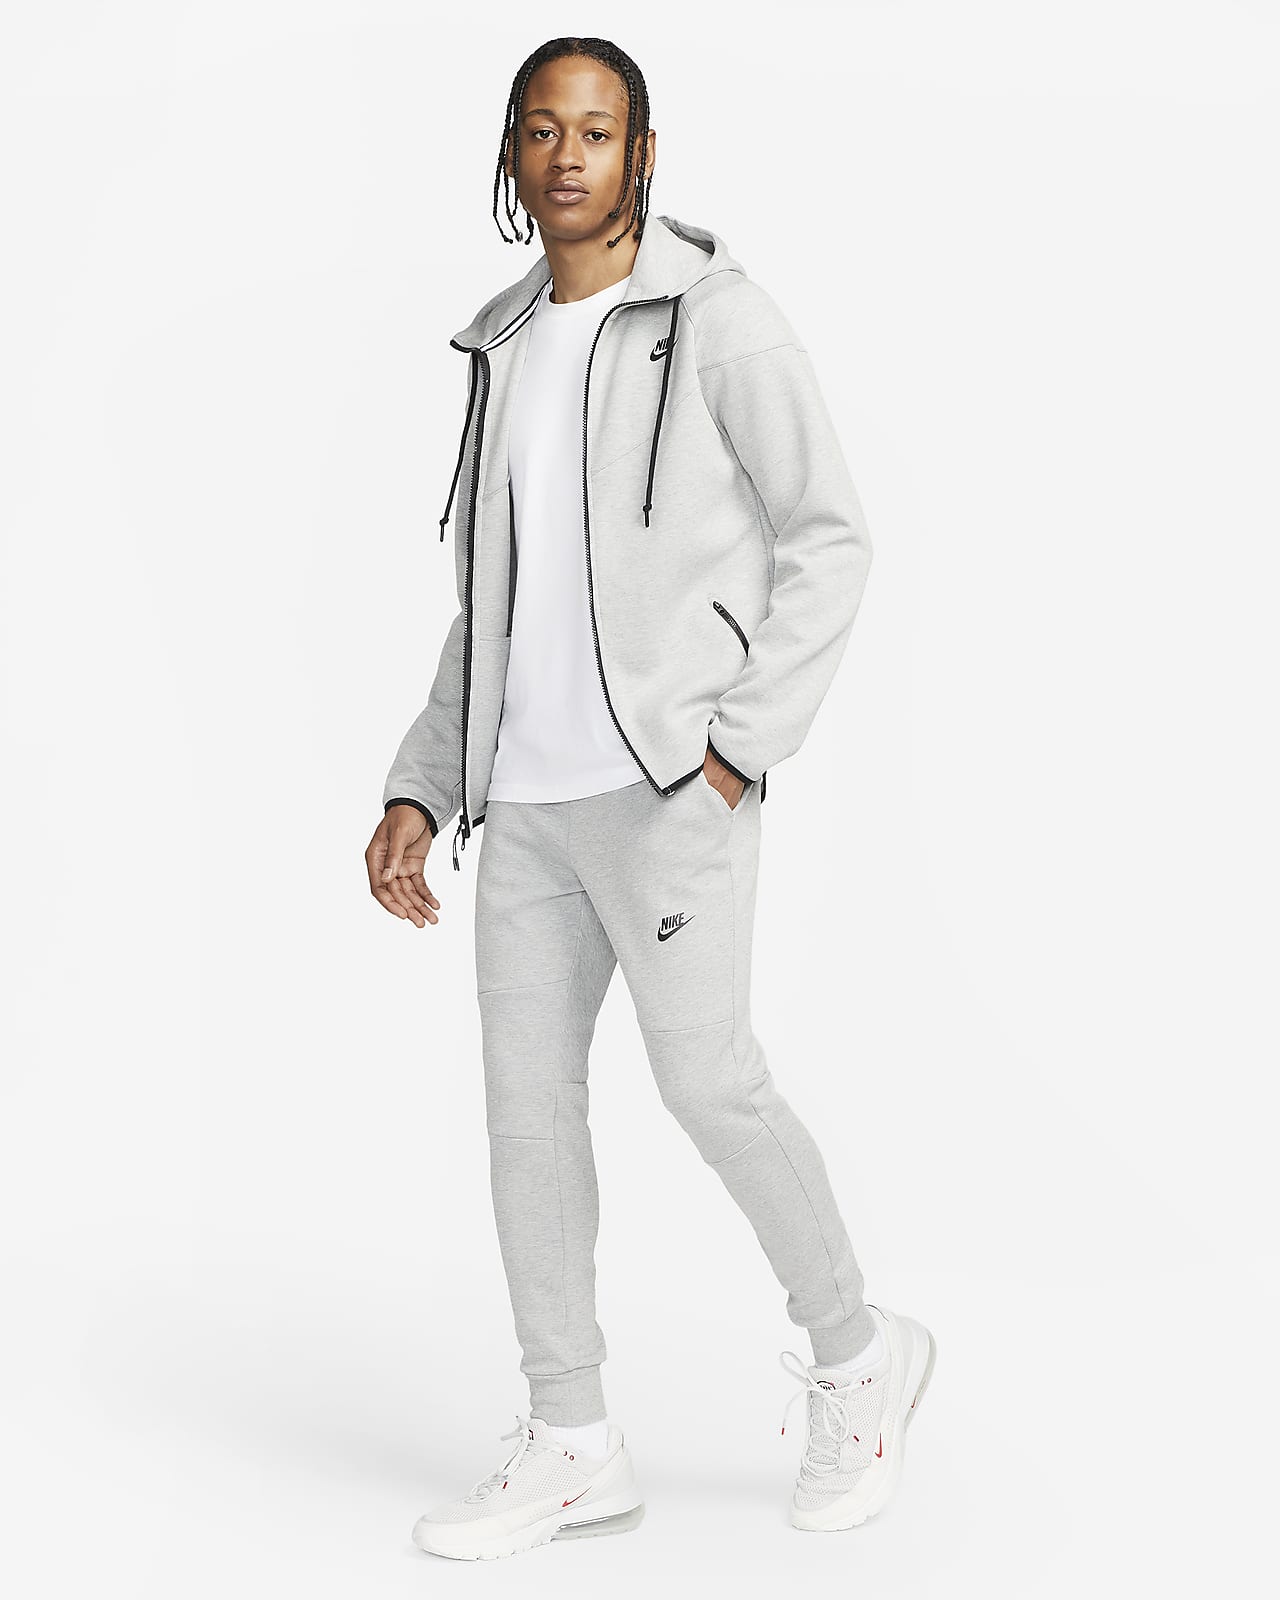 Nike Sportswear Tech Fleece OG Men's Full-Zip Hoodie, 51% OFF